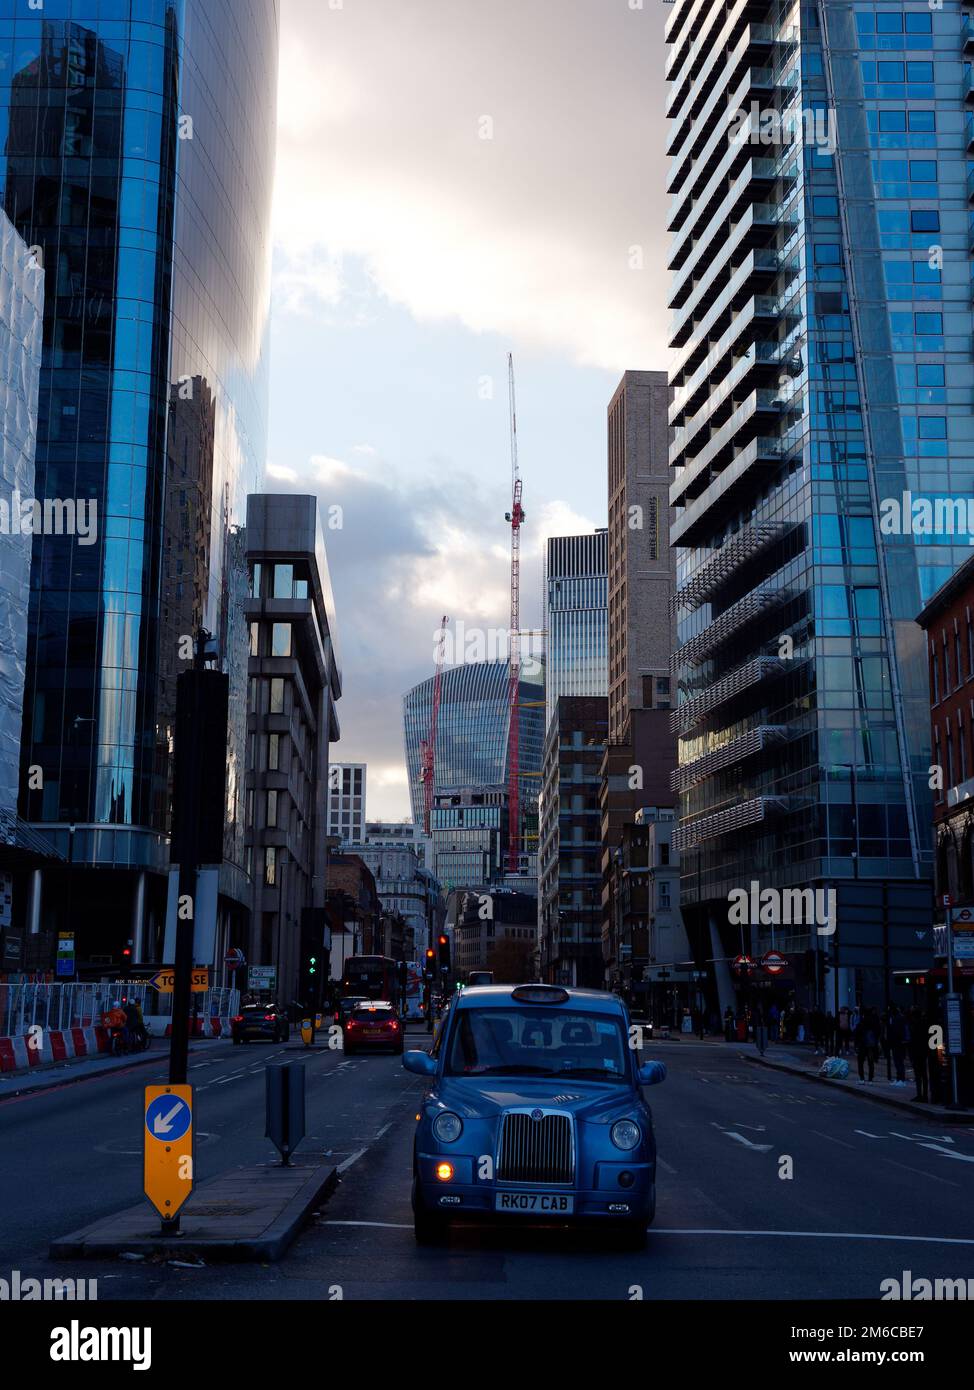 Das blaue Taxi wartet an einer Kreuzung in London mit einem dramatischen Abendhimmel und dem Walkie Talkie Wolkenkratzer. England. Stockfoto